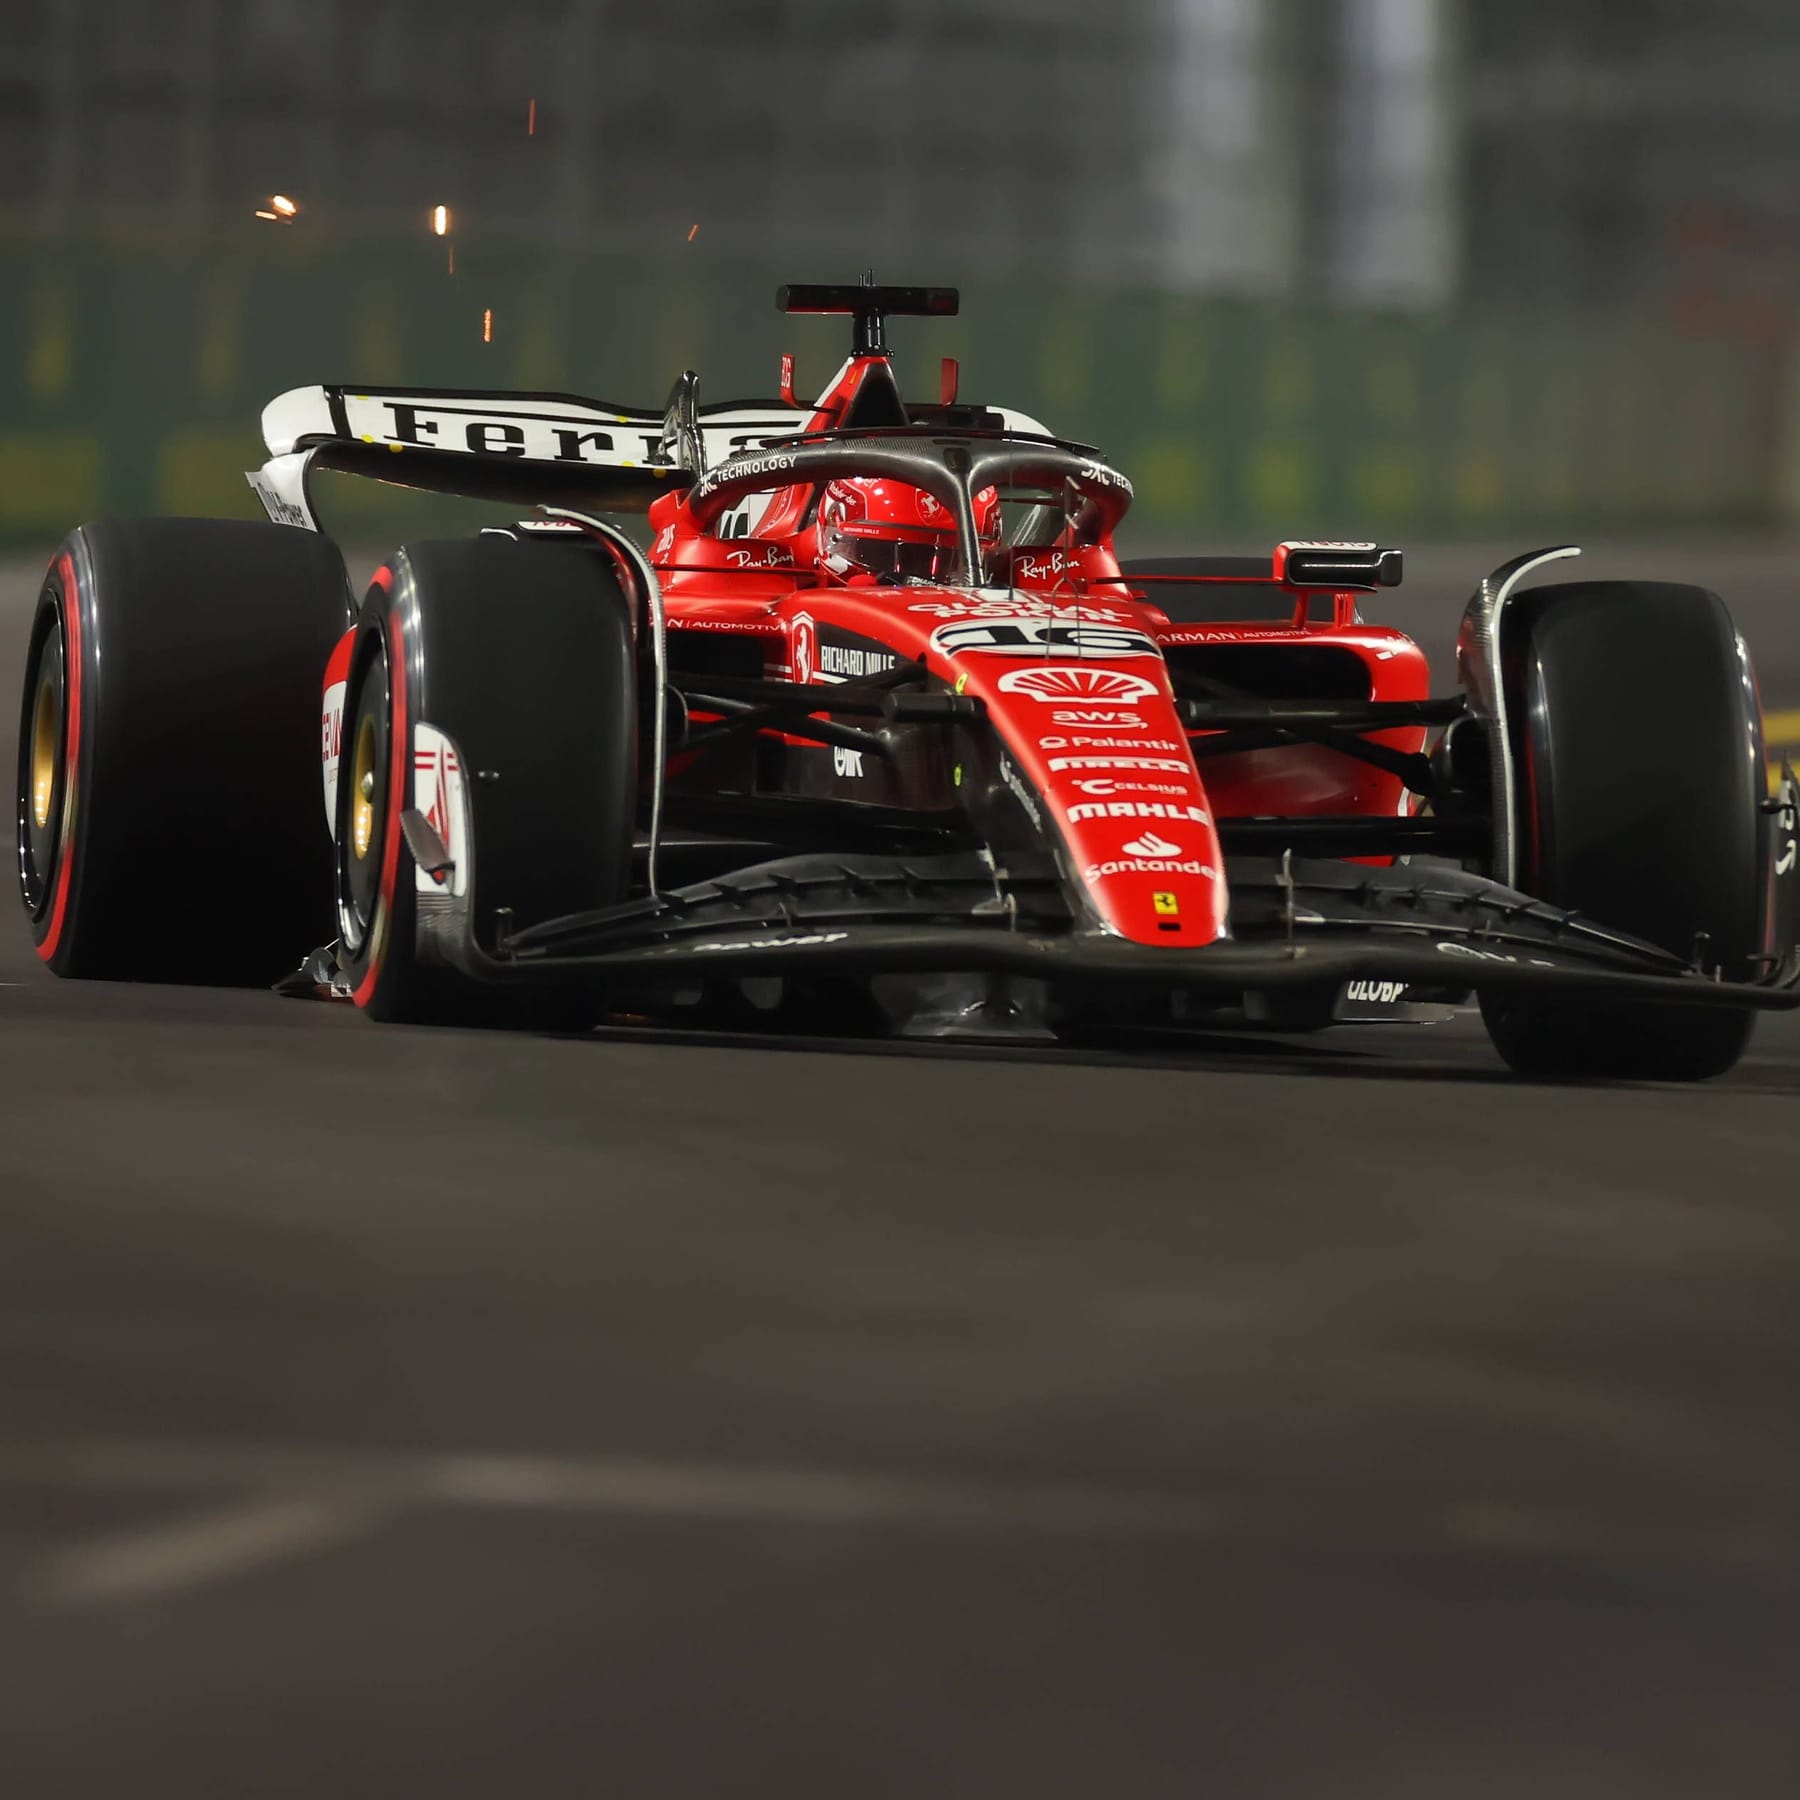 Formel 1 News, Ergebnisse, Termine und Live-Ticker zur F1